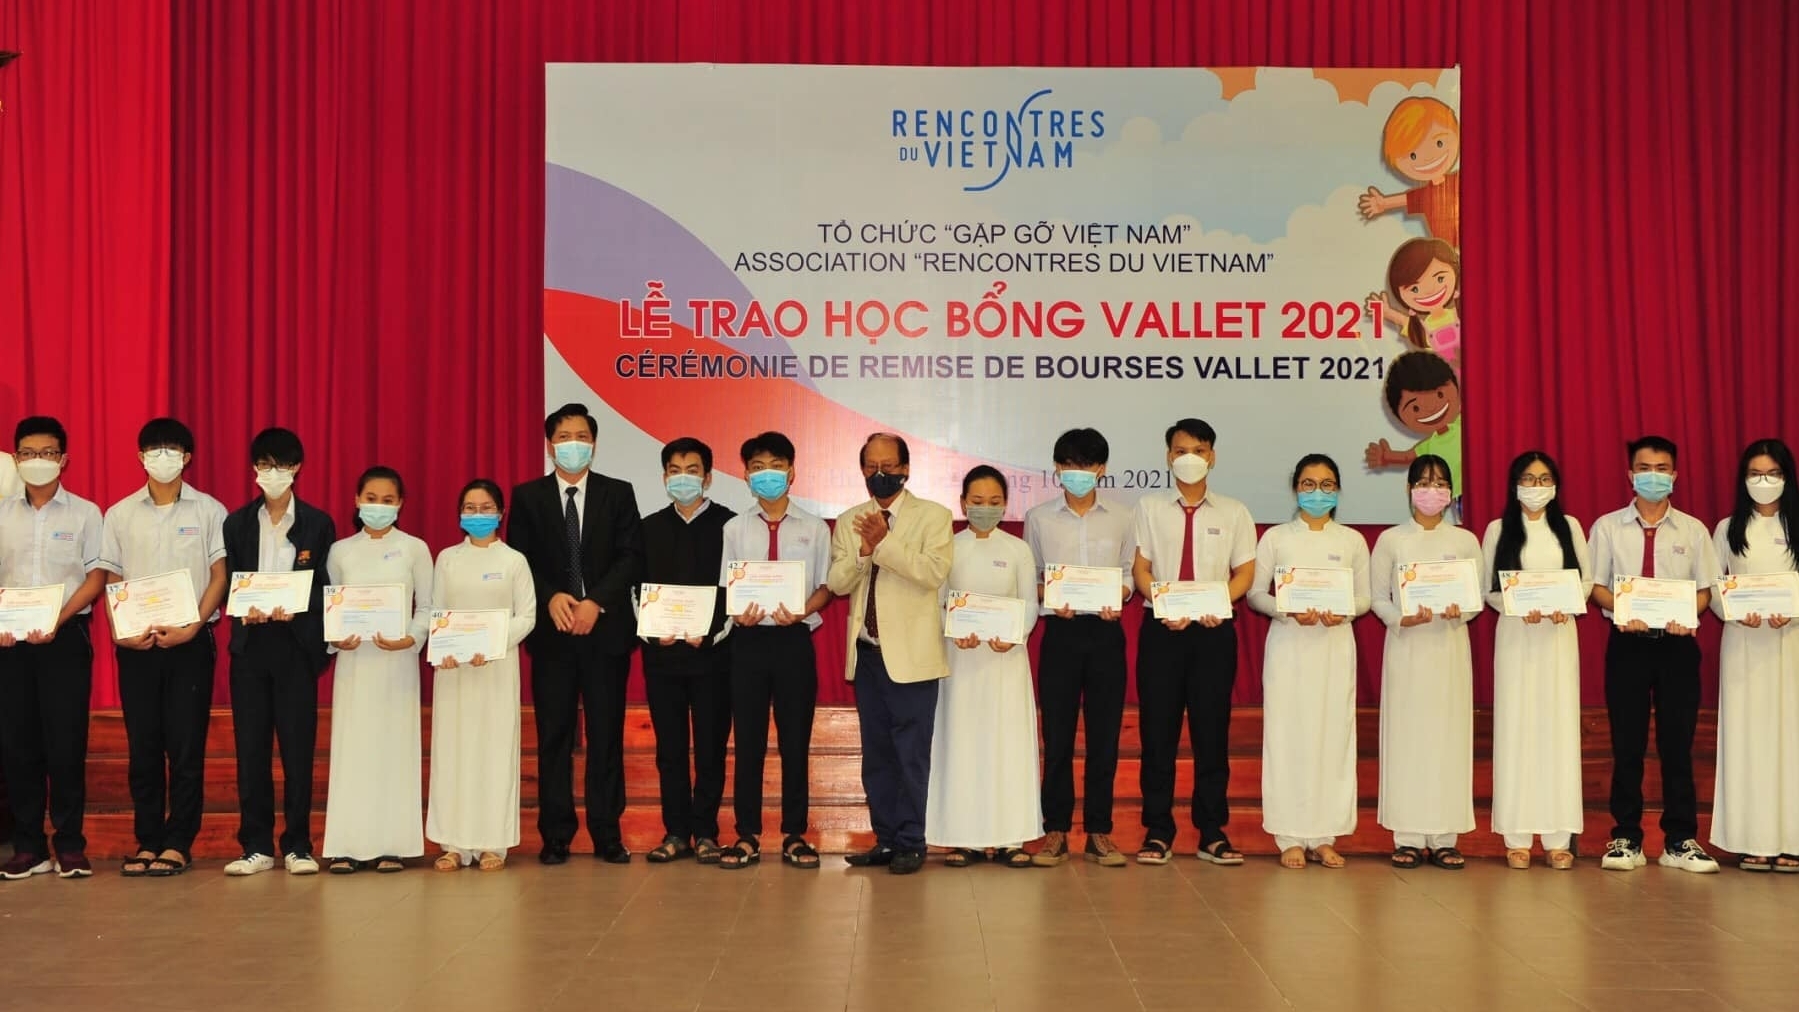 两千多名越南学生获得了越南聚会组织的Vallet 奖学金